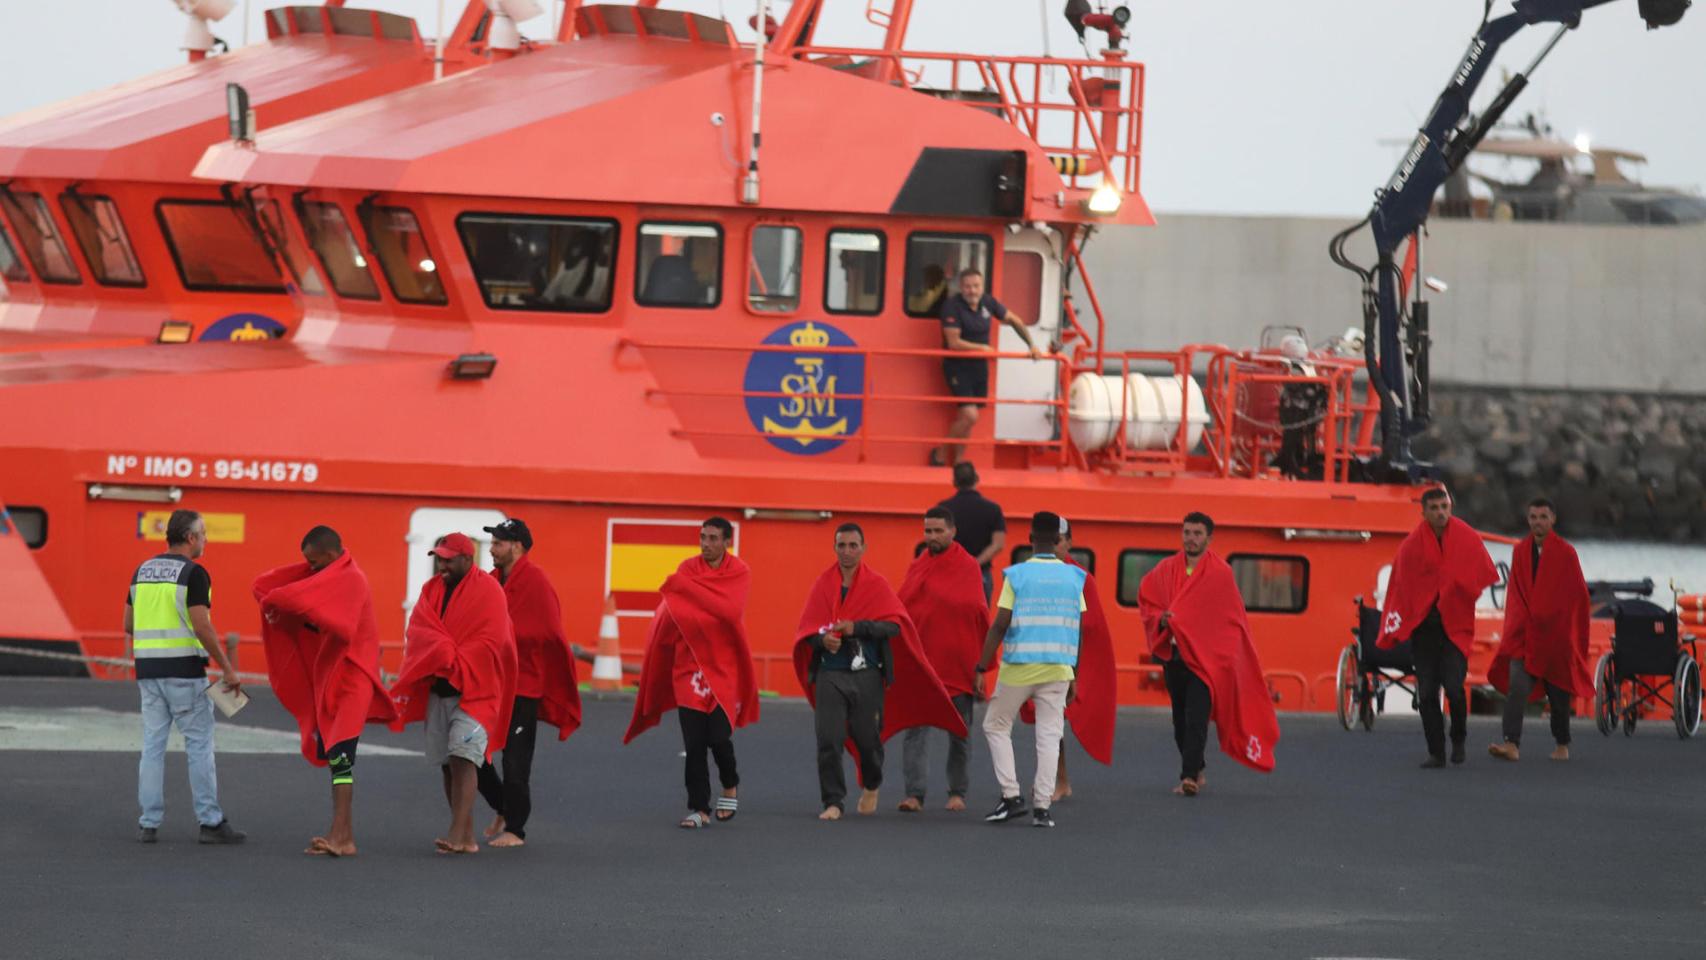 Un grupo de migrantes llegan al puerto de Arrecife (Lanzarote) tras ser rescatados en el mar